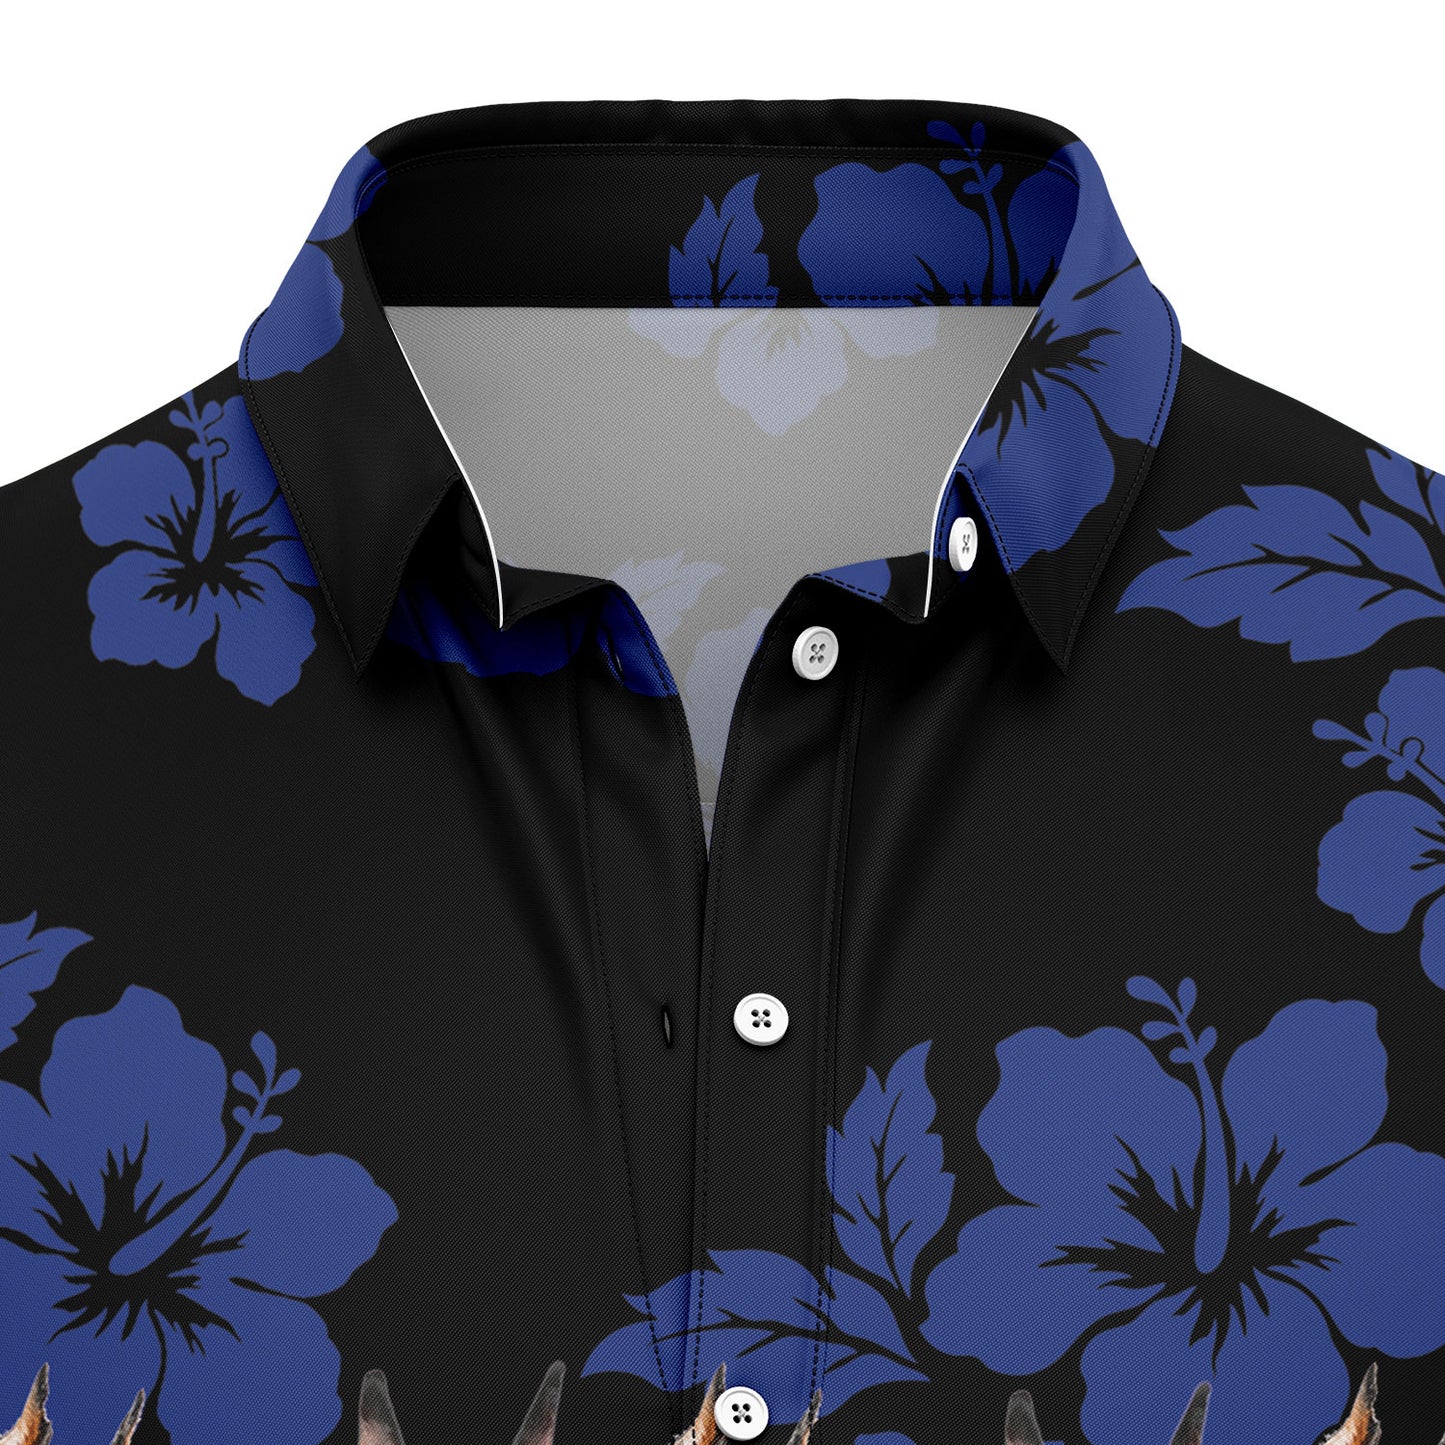 Awesome Doberman Pinscher TG5721 Hawaiian Shirt